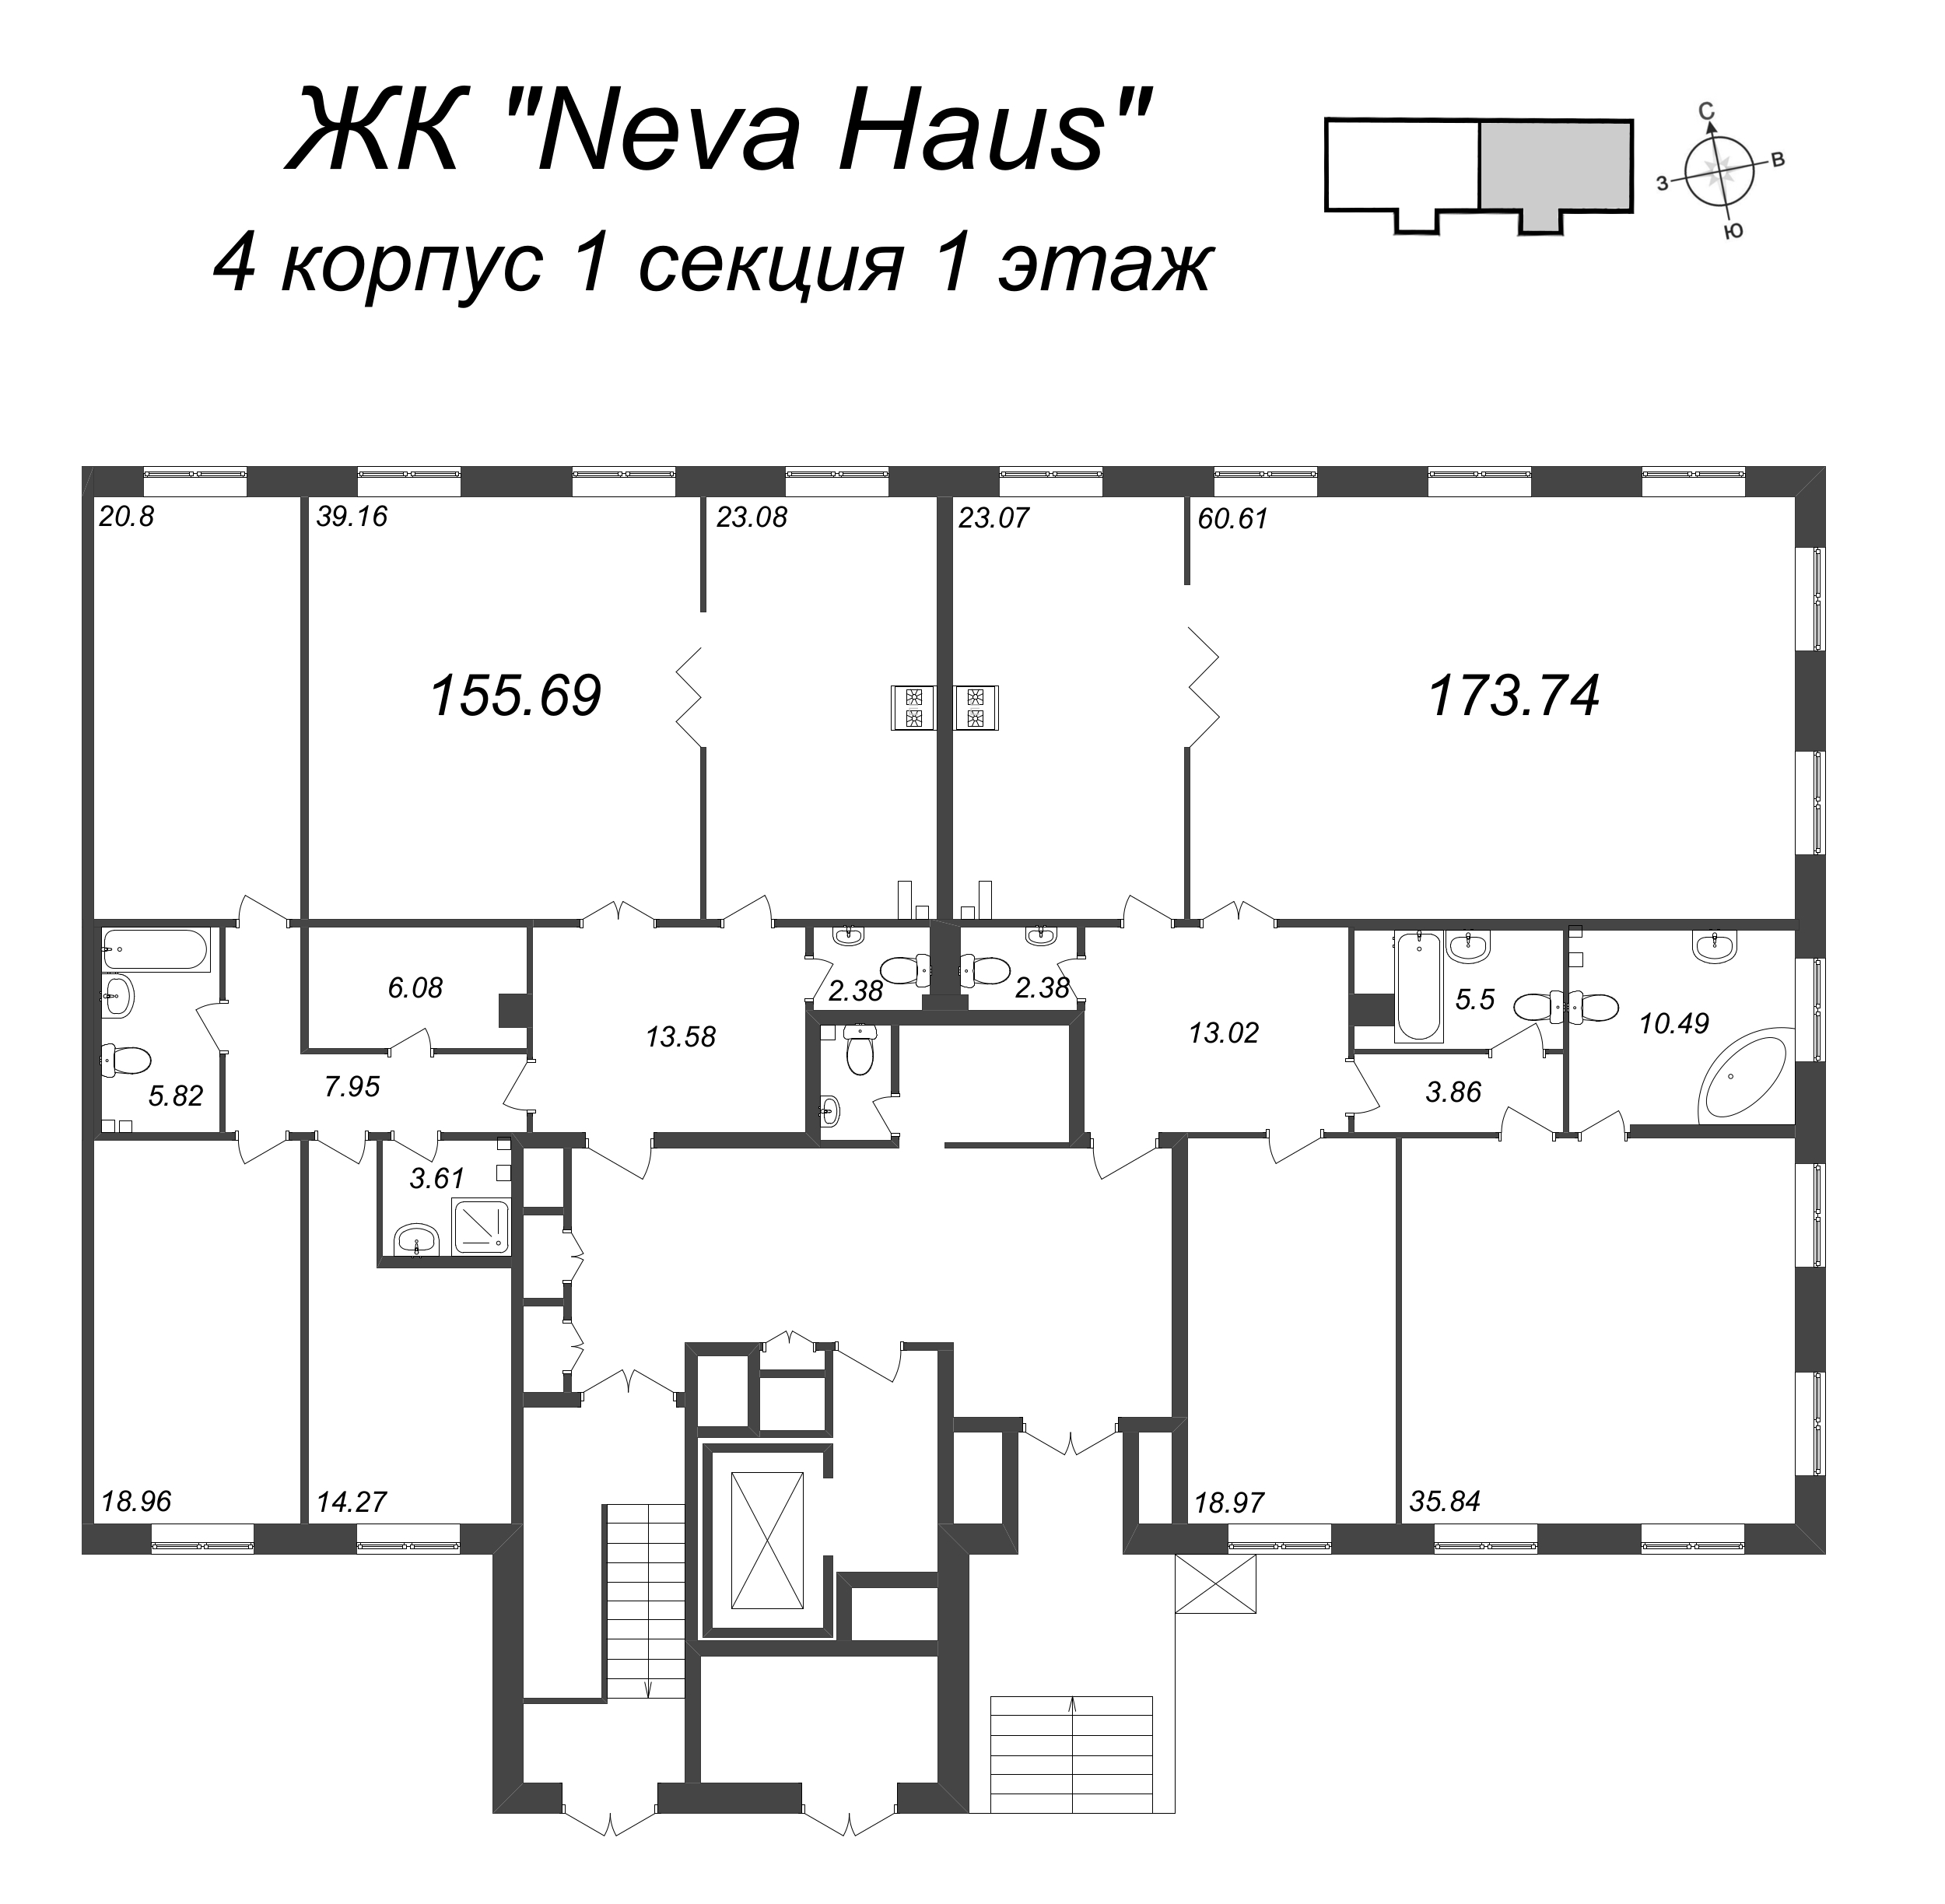 5-комнатная (Евро) квартира, 155.5 м² в ЖК "Neva Haus" - планировка этажа